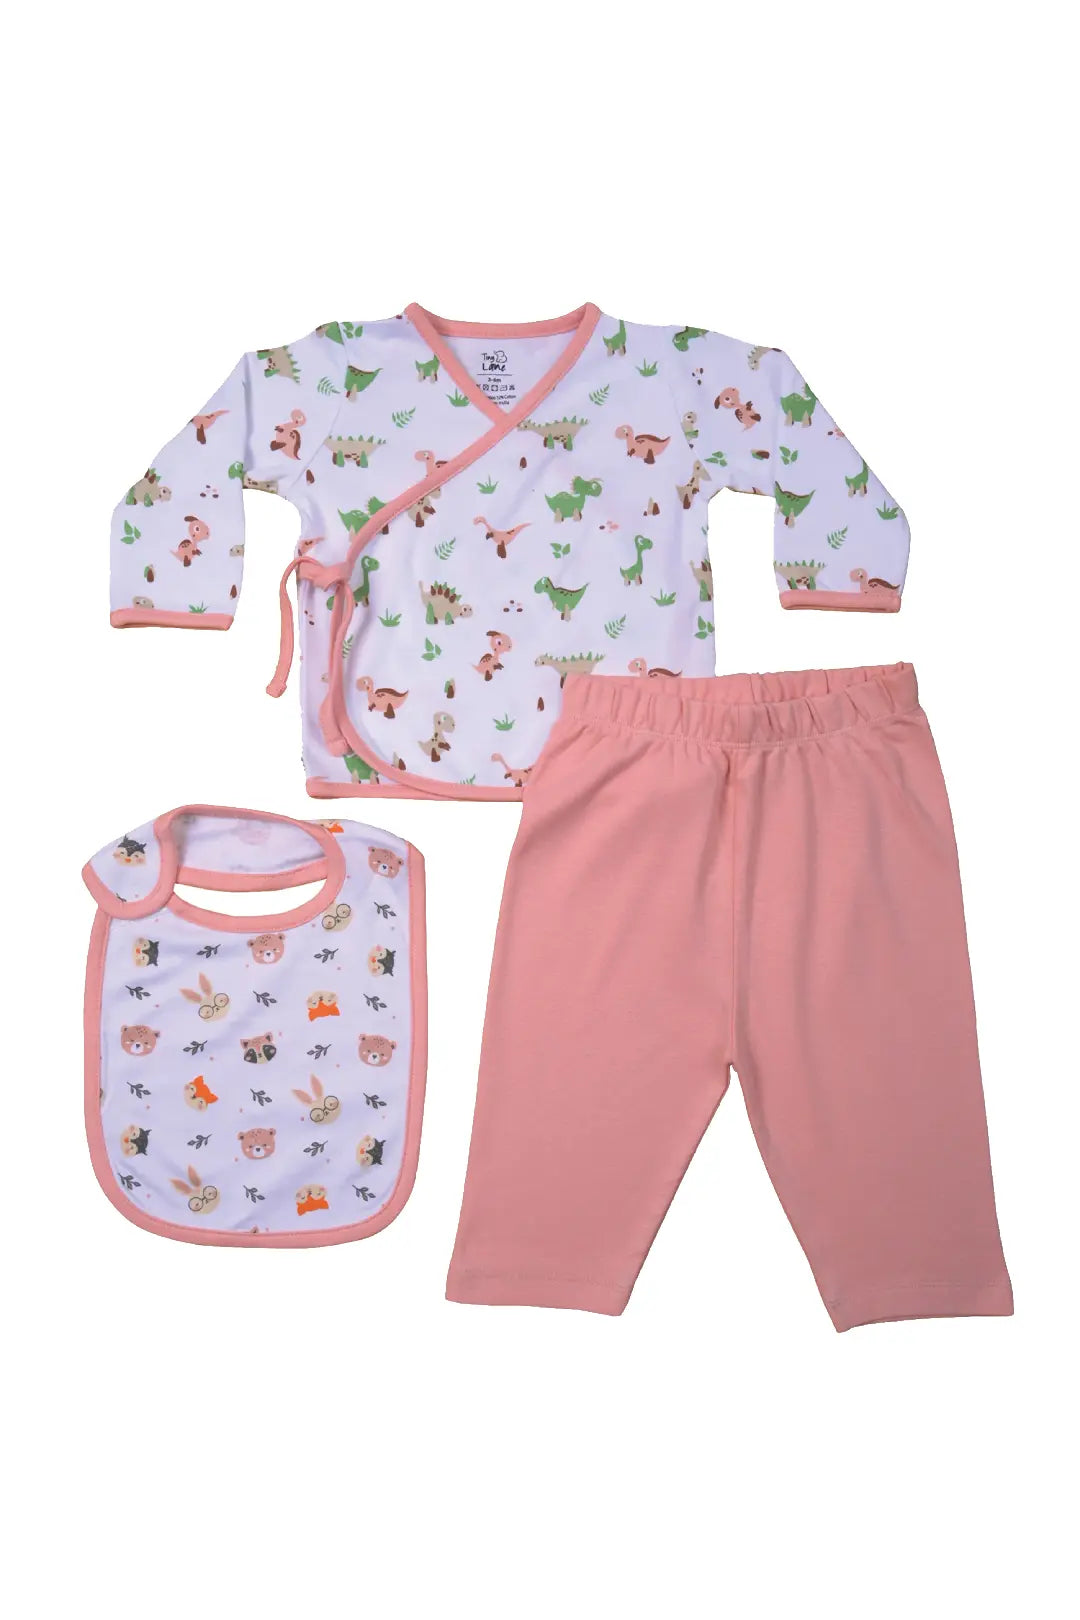 Tiny Lane Giggle Baby Clothing Set